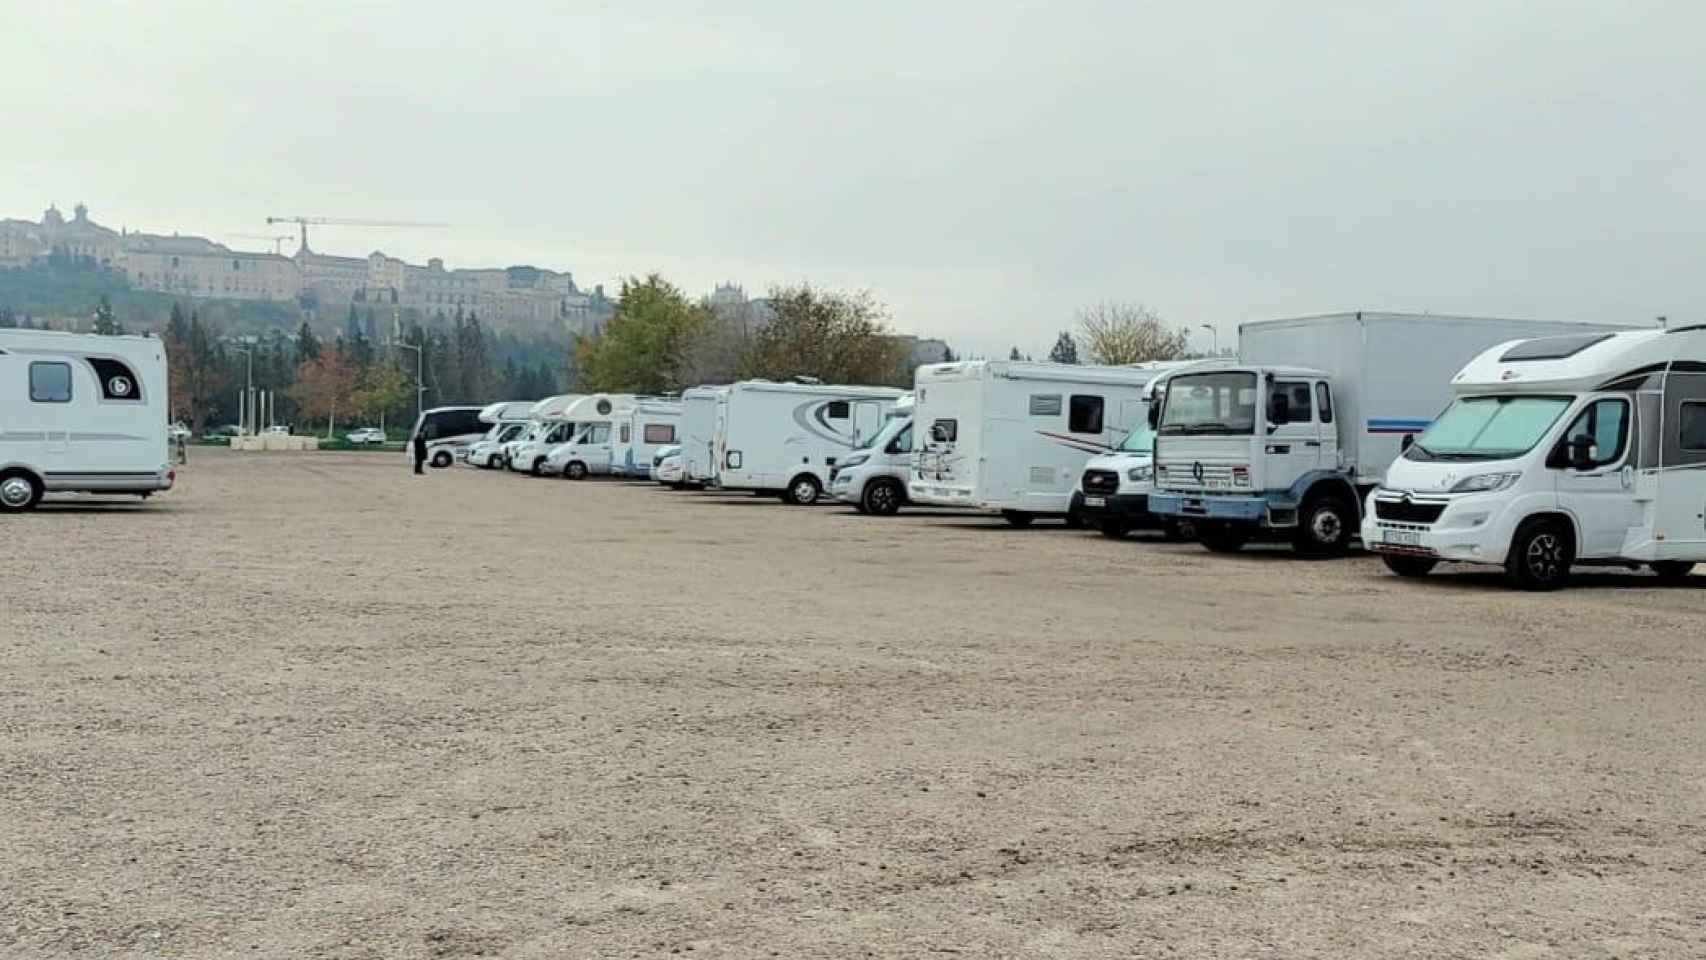 Caravanas aparcadas en el parking de Santa Teresa. Foto: Juan Manuel Guío